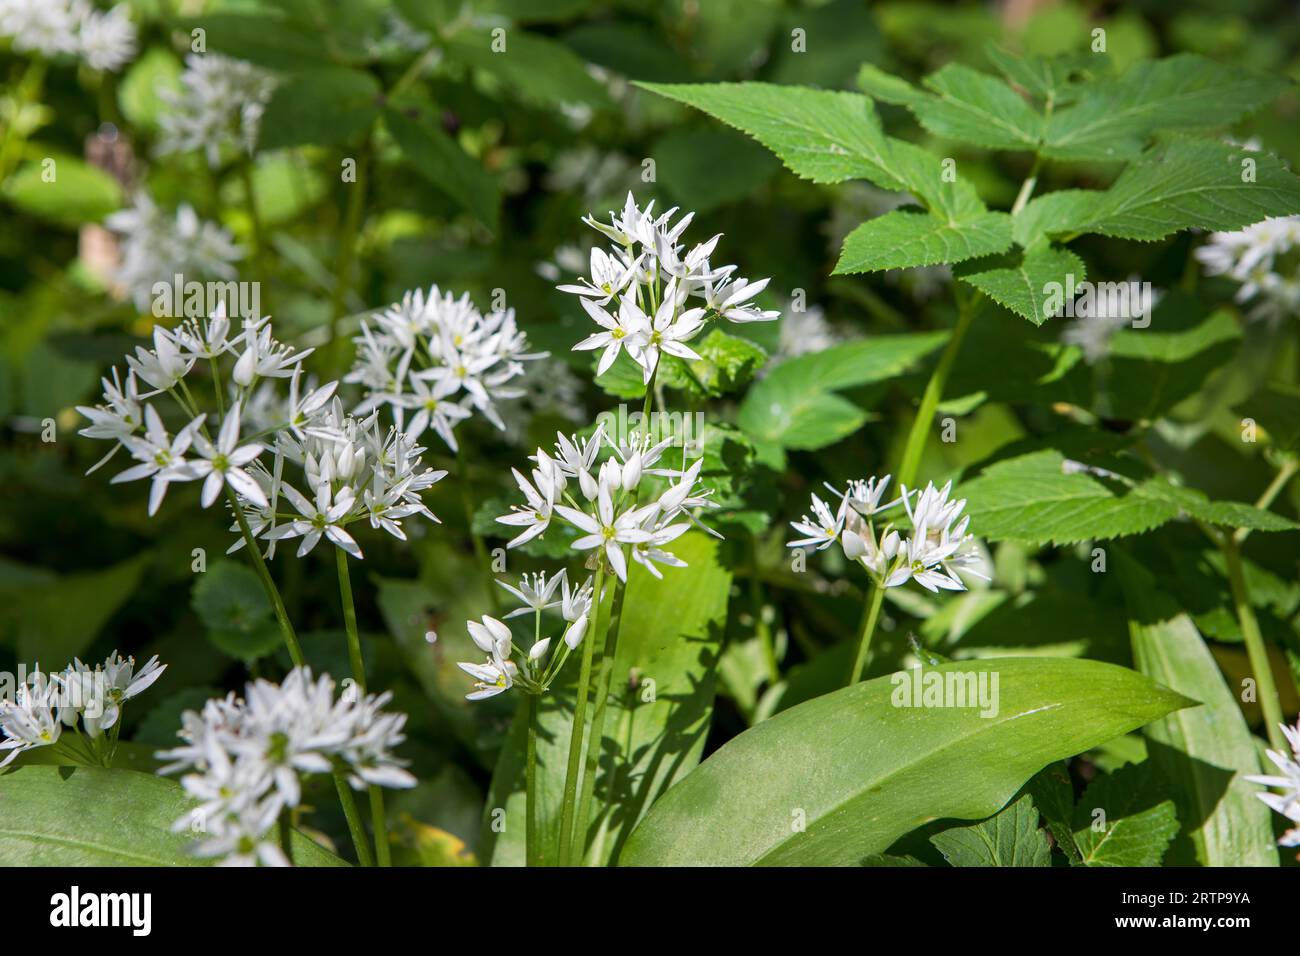 Allium ursinum bekannt als Knoblauch, Ramson, Cowleekes, Buckrams, breitblättriger Knoblauch, im Holz wachsen Knoblauch- und Bärenlauchpflanzen. Wilder Kräuterwit Stockfoto